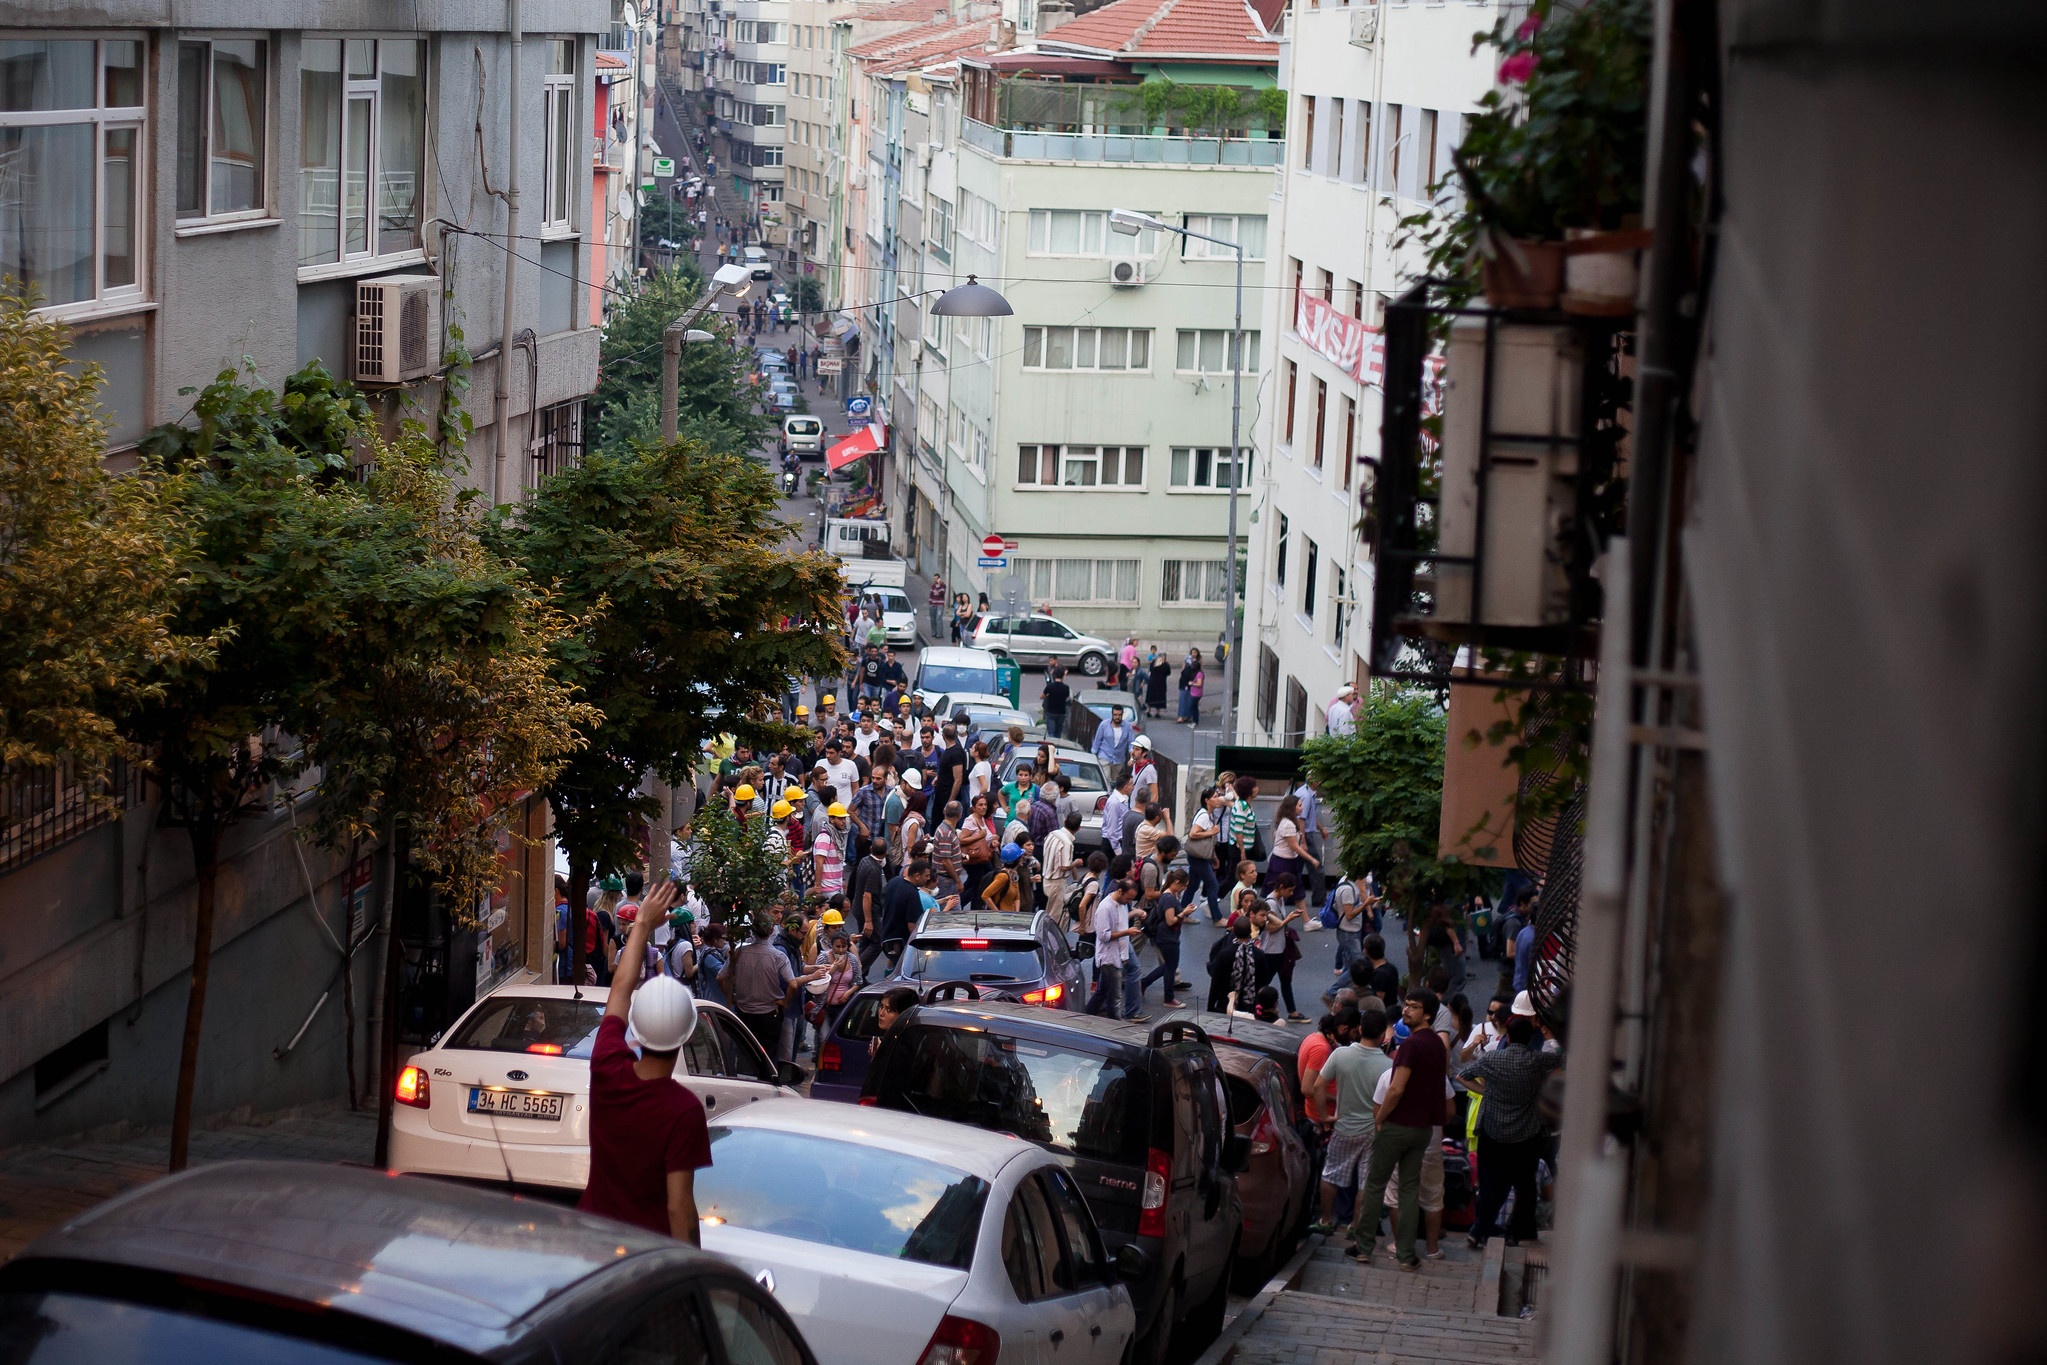 Crowds on their way to Taksim.